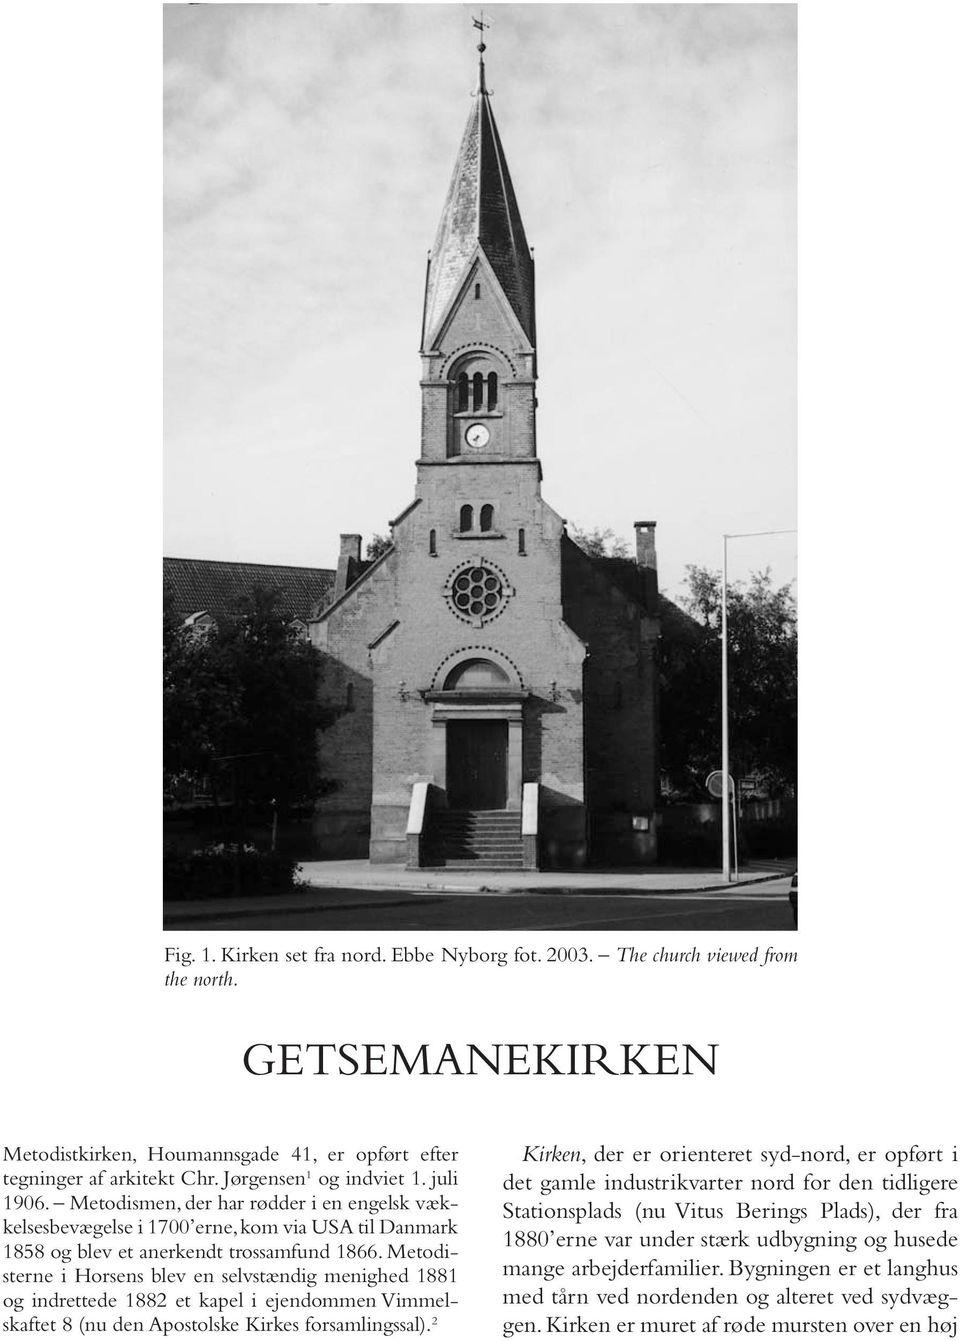 Metodisterne i Horsens blev en selvstændig menighed 1881 og indrettede 1882 et kapel i ejendommen Vimmelskaftet 8 (nu den Apostolske Kirkes forsamlingssal).